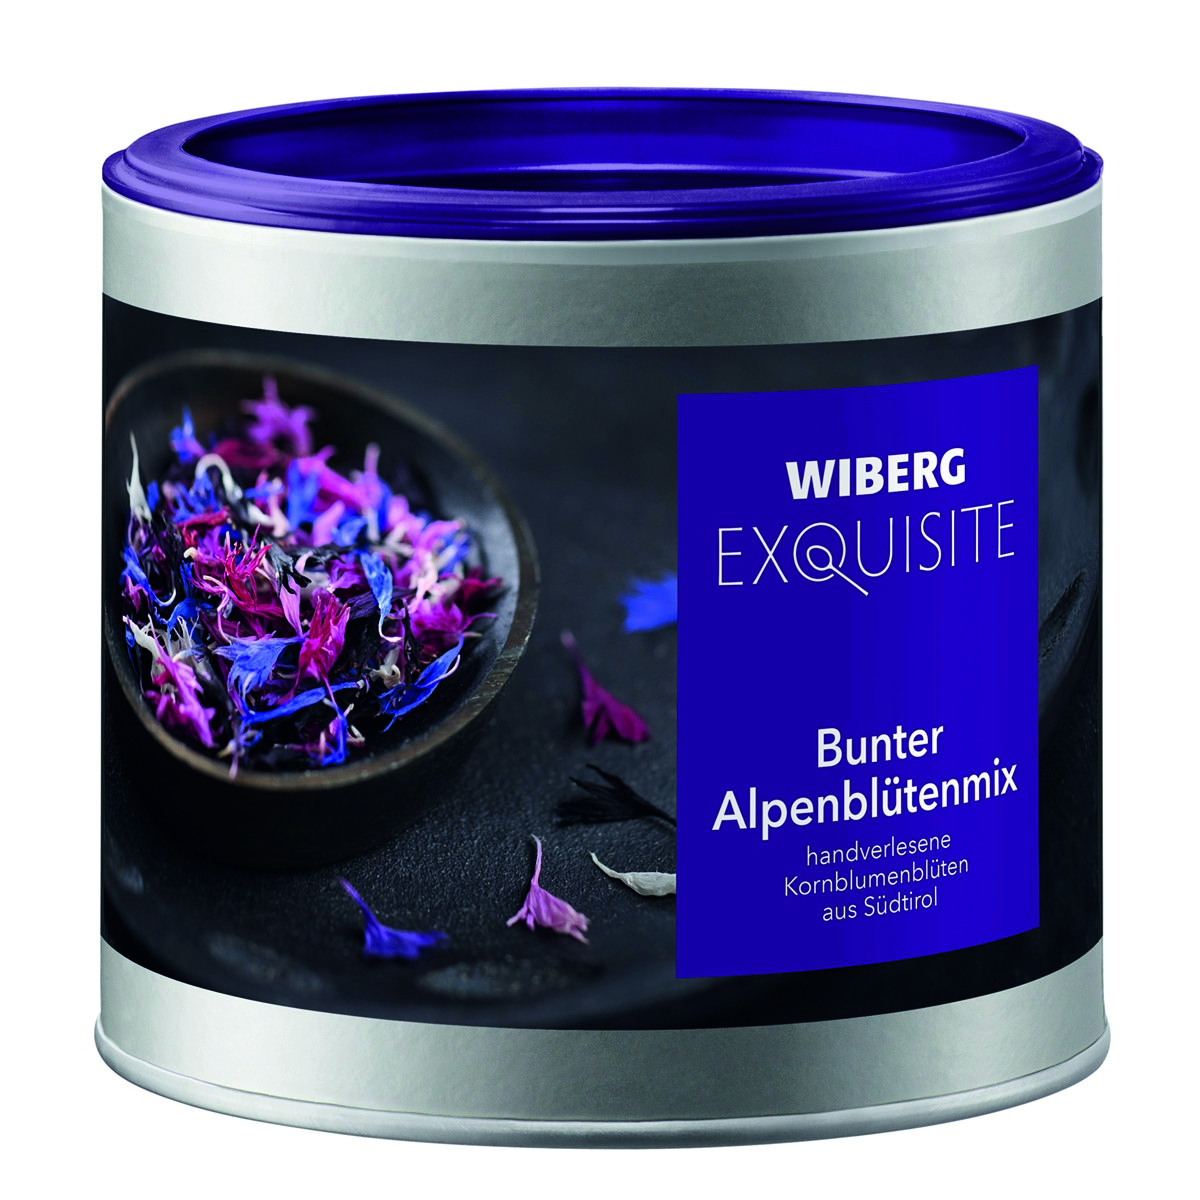 WIBERG Exquisite Bunter Alpenblütenmix